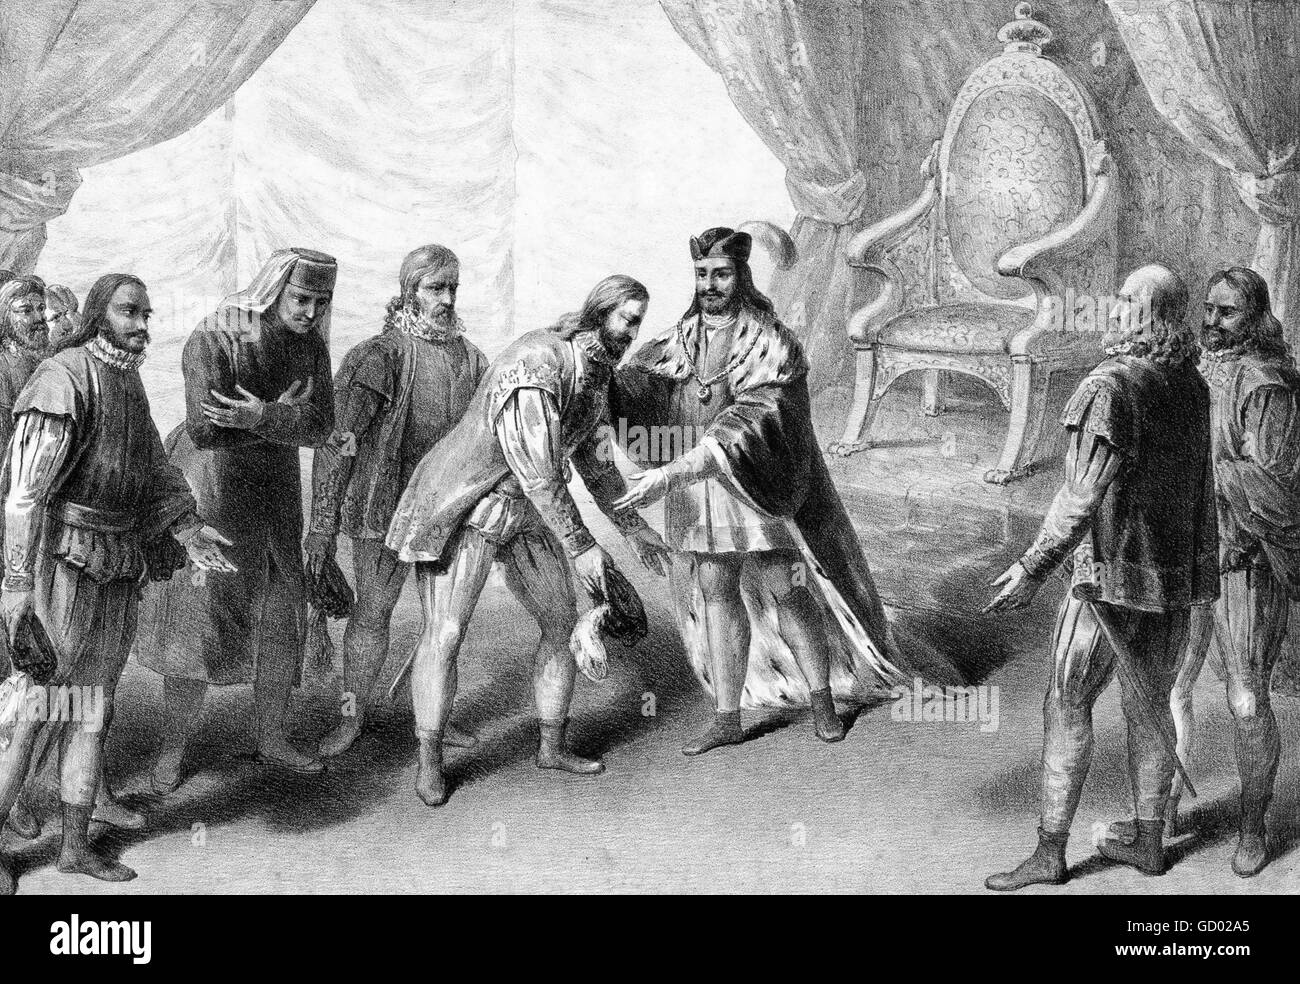 Vasco de Gama. L'explorateur portugais, Vasco da Gama, premier comte de Vidigueira (ch. 1460-1524), être accueilli par le roi Manuel I en 1499 après son retour de découvrir la première route maritime de l'Inde. Banque D'Images